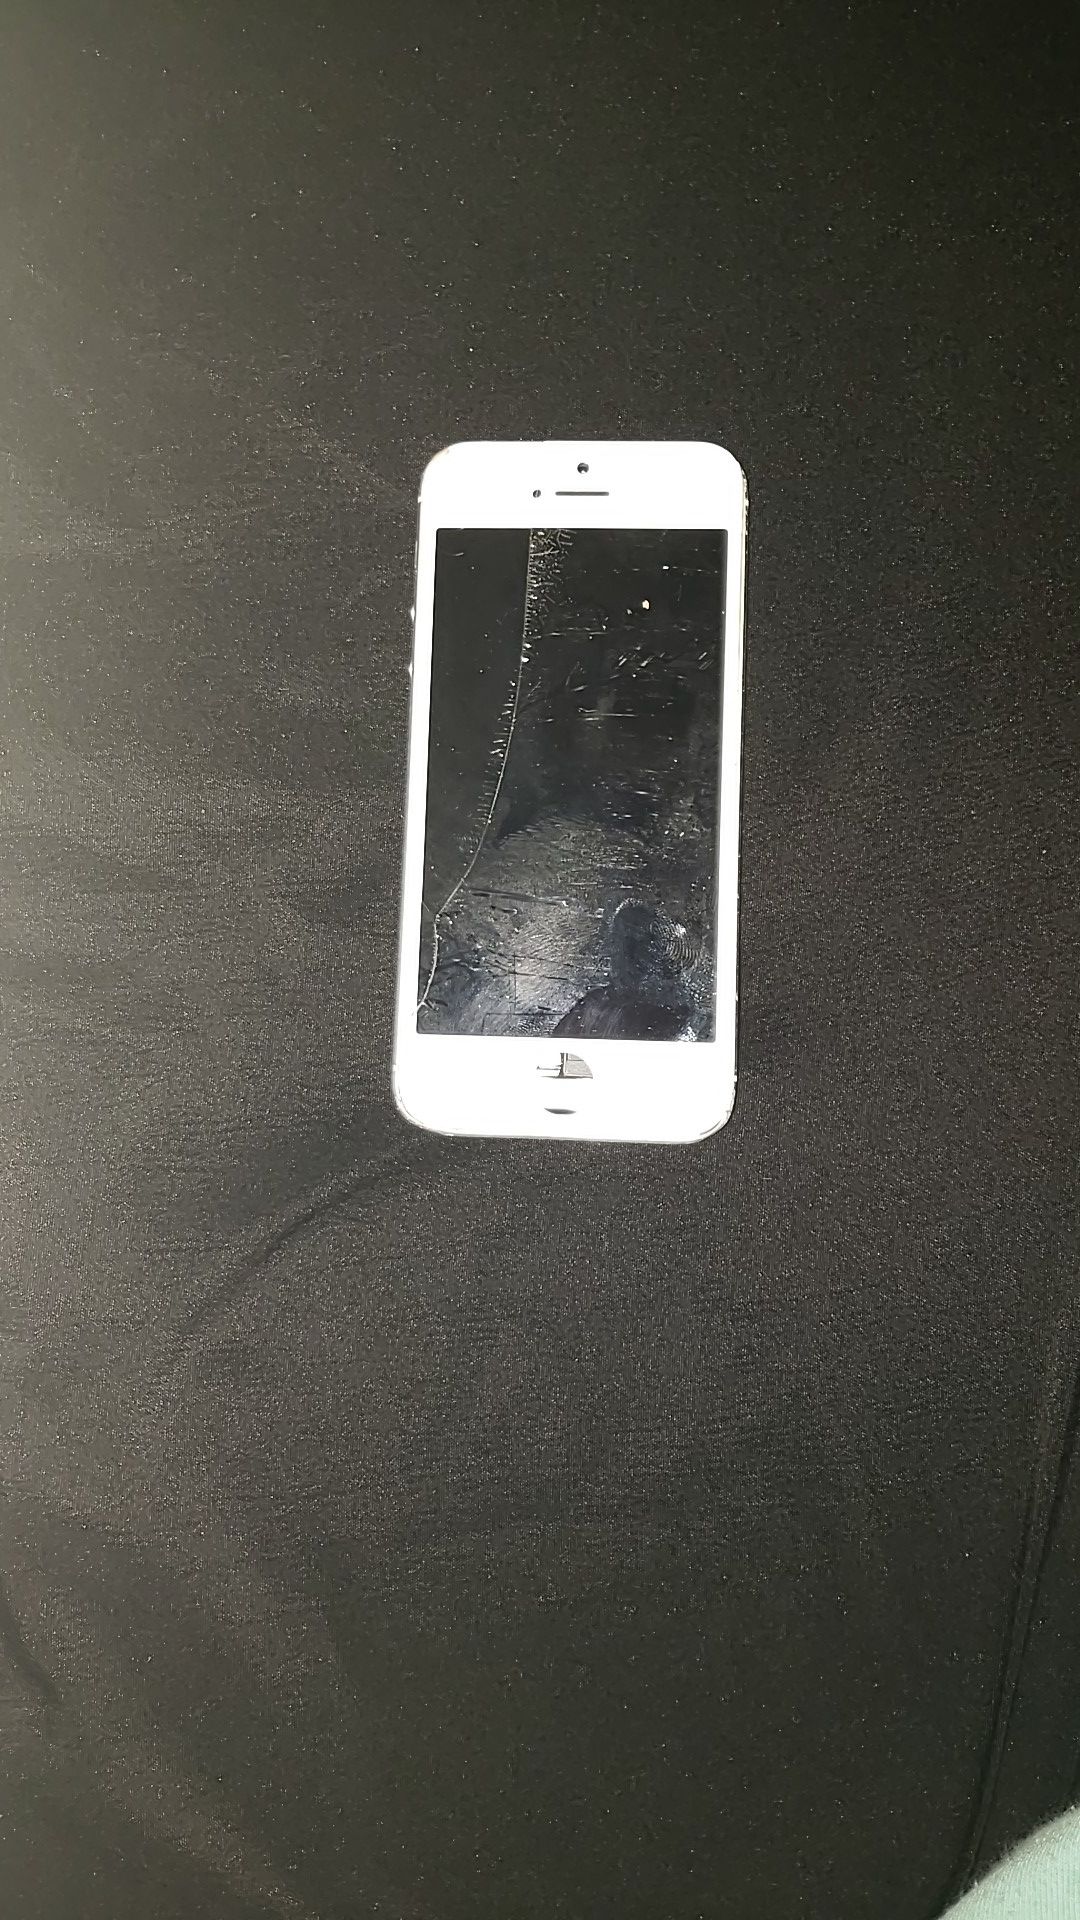 iPhone 4 screen is broken